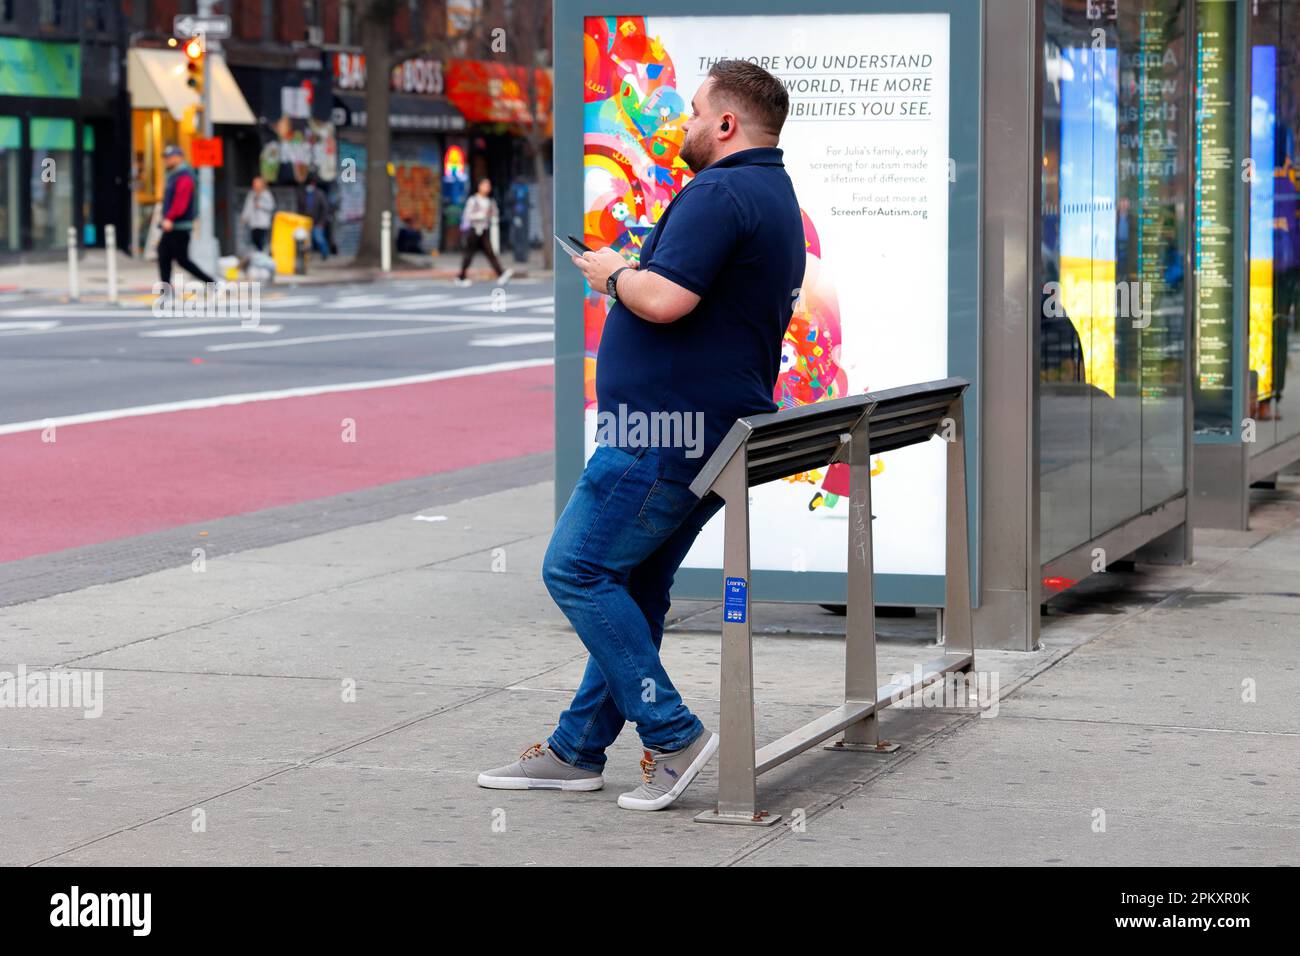 Eine Person, die sich an einer neigenden Bar oder einer neigenden Bank an einer Bushaltestelle in Manhattan in New York City ruht. Feindliche Architektur gegen Sitzen und herumlungern. Stockfoto